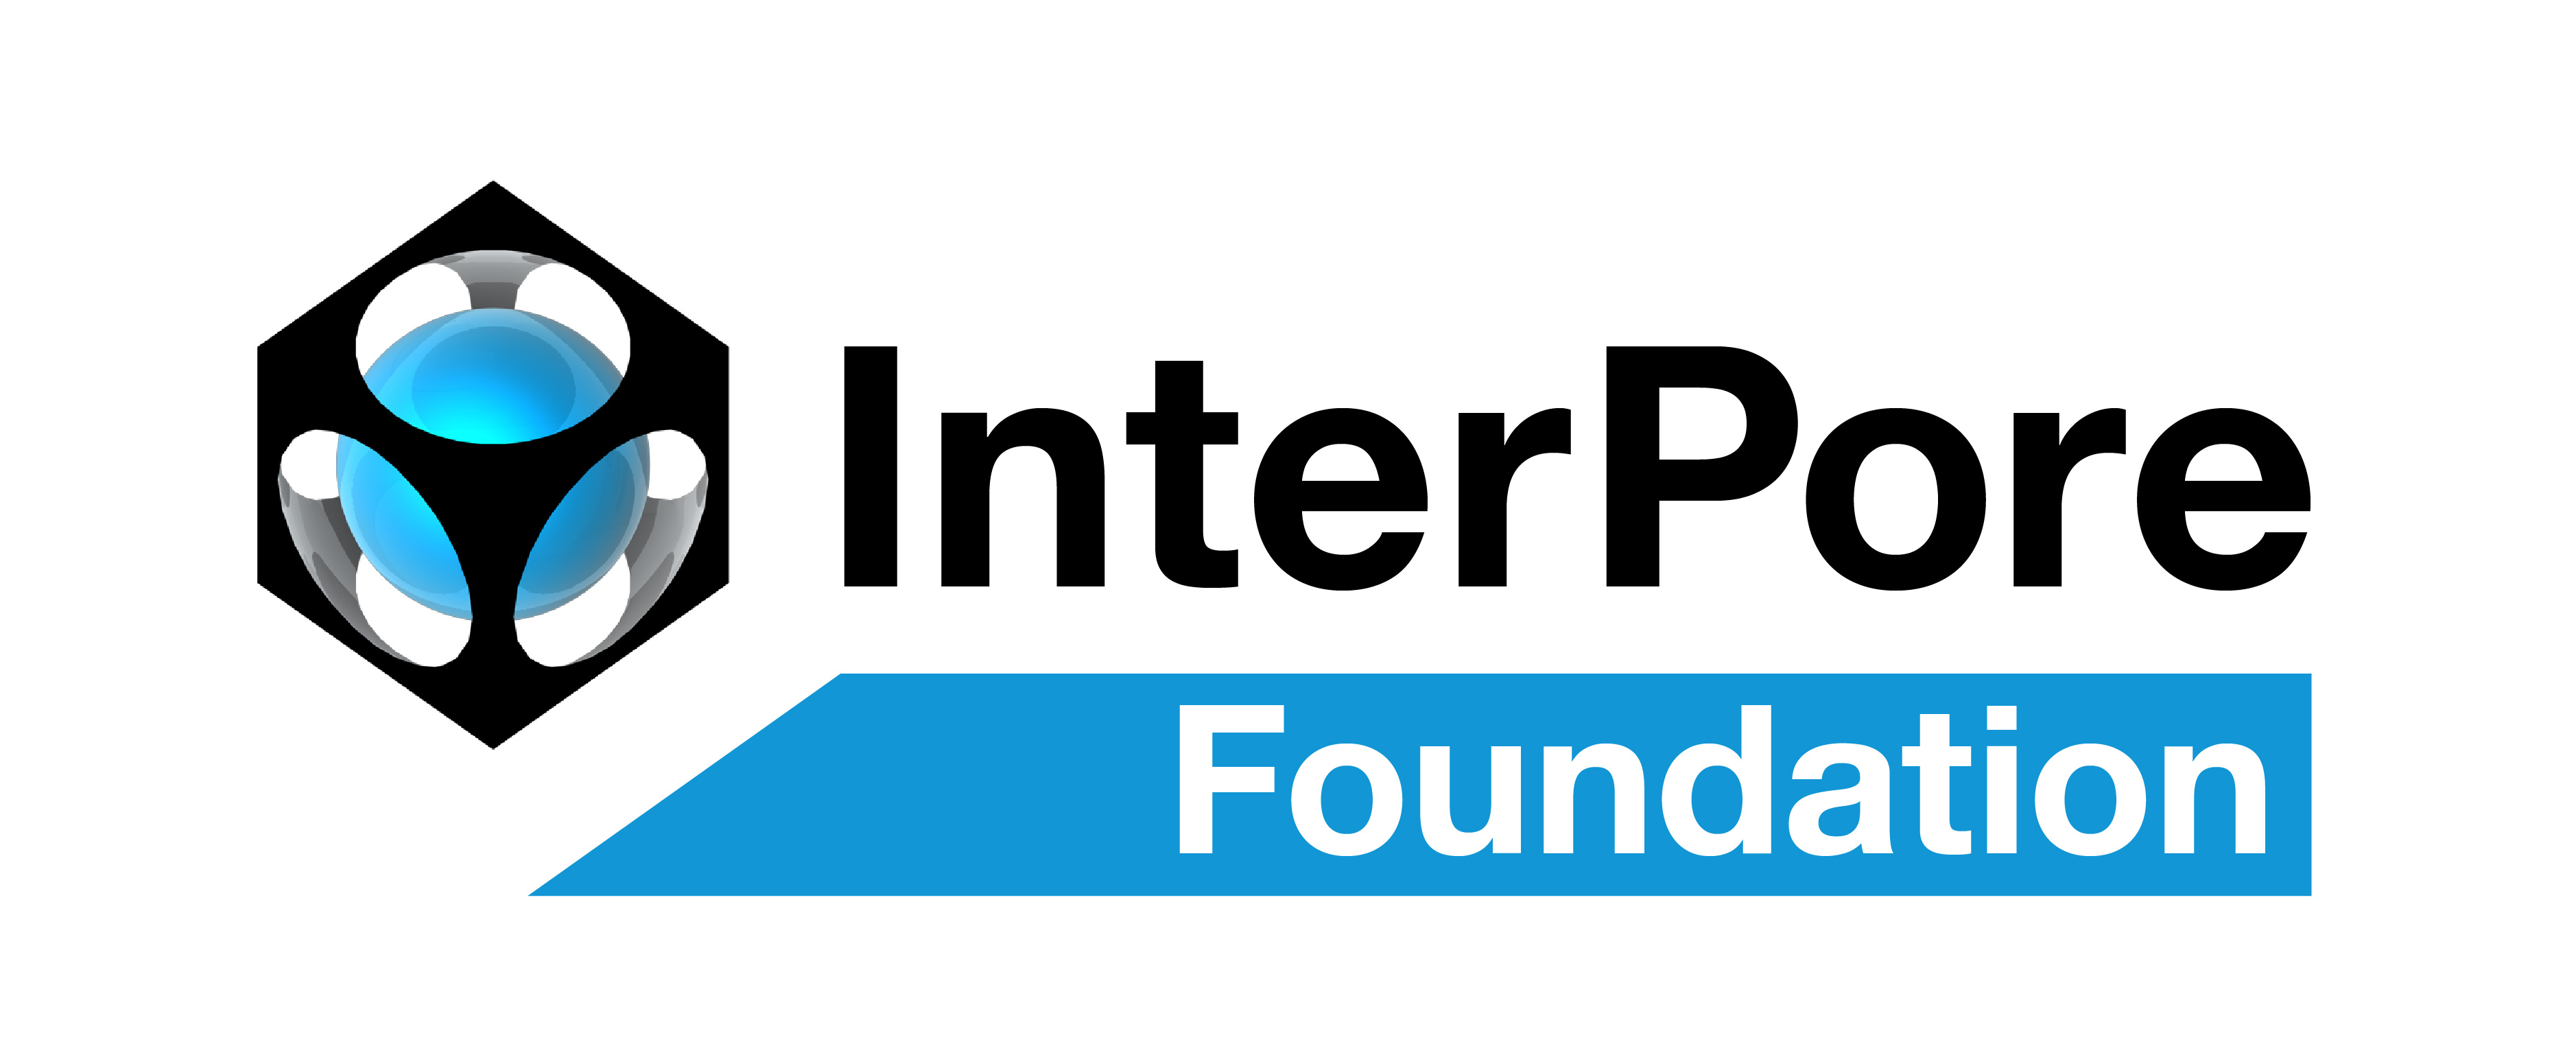 InterPore Foundation m